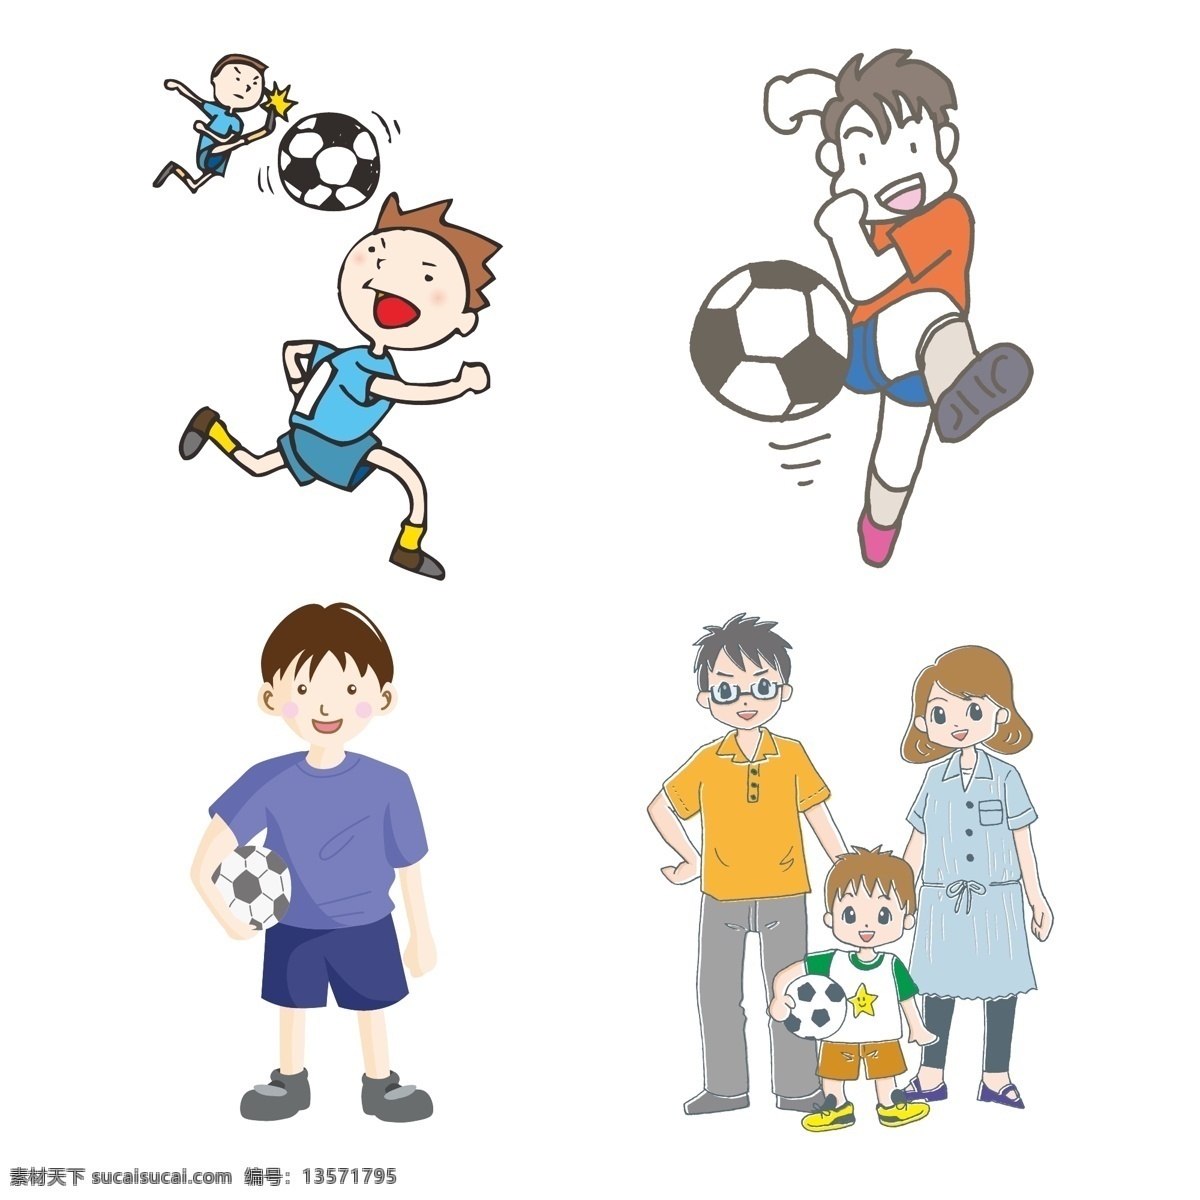 踢足球图片 踢足球 卡通 男孩 家长 爸爸 妈妈 动漫卡通插图 动漫动画